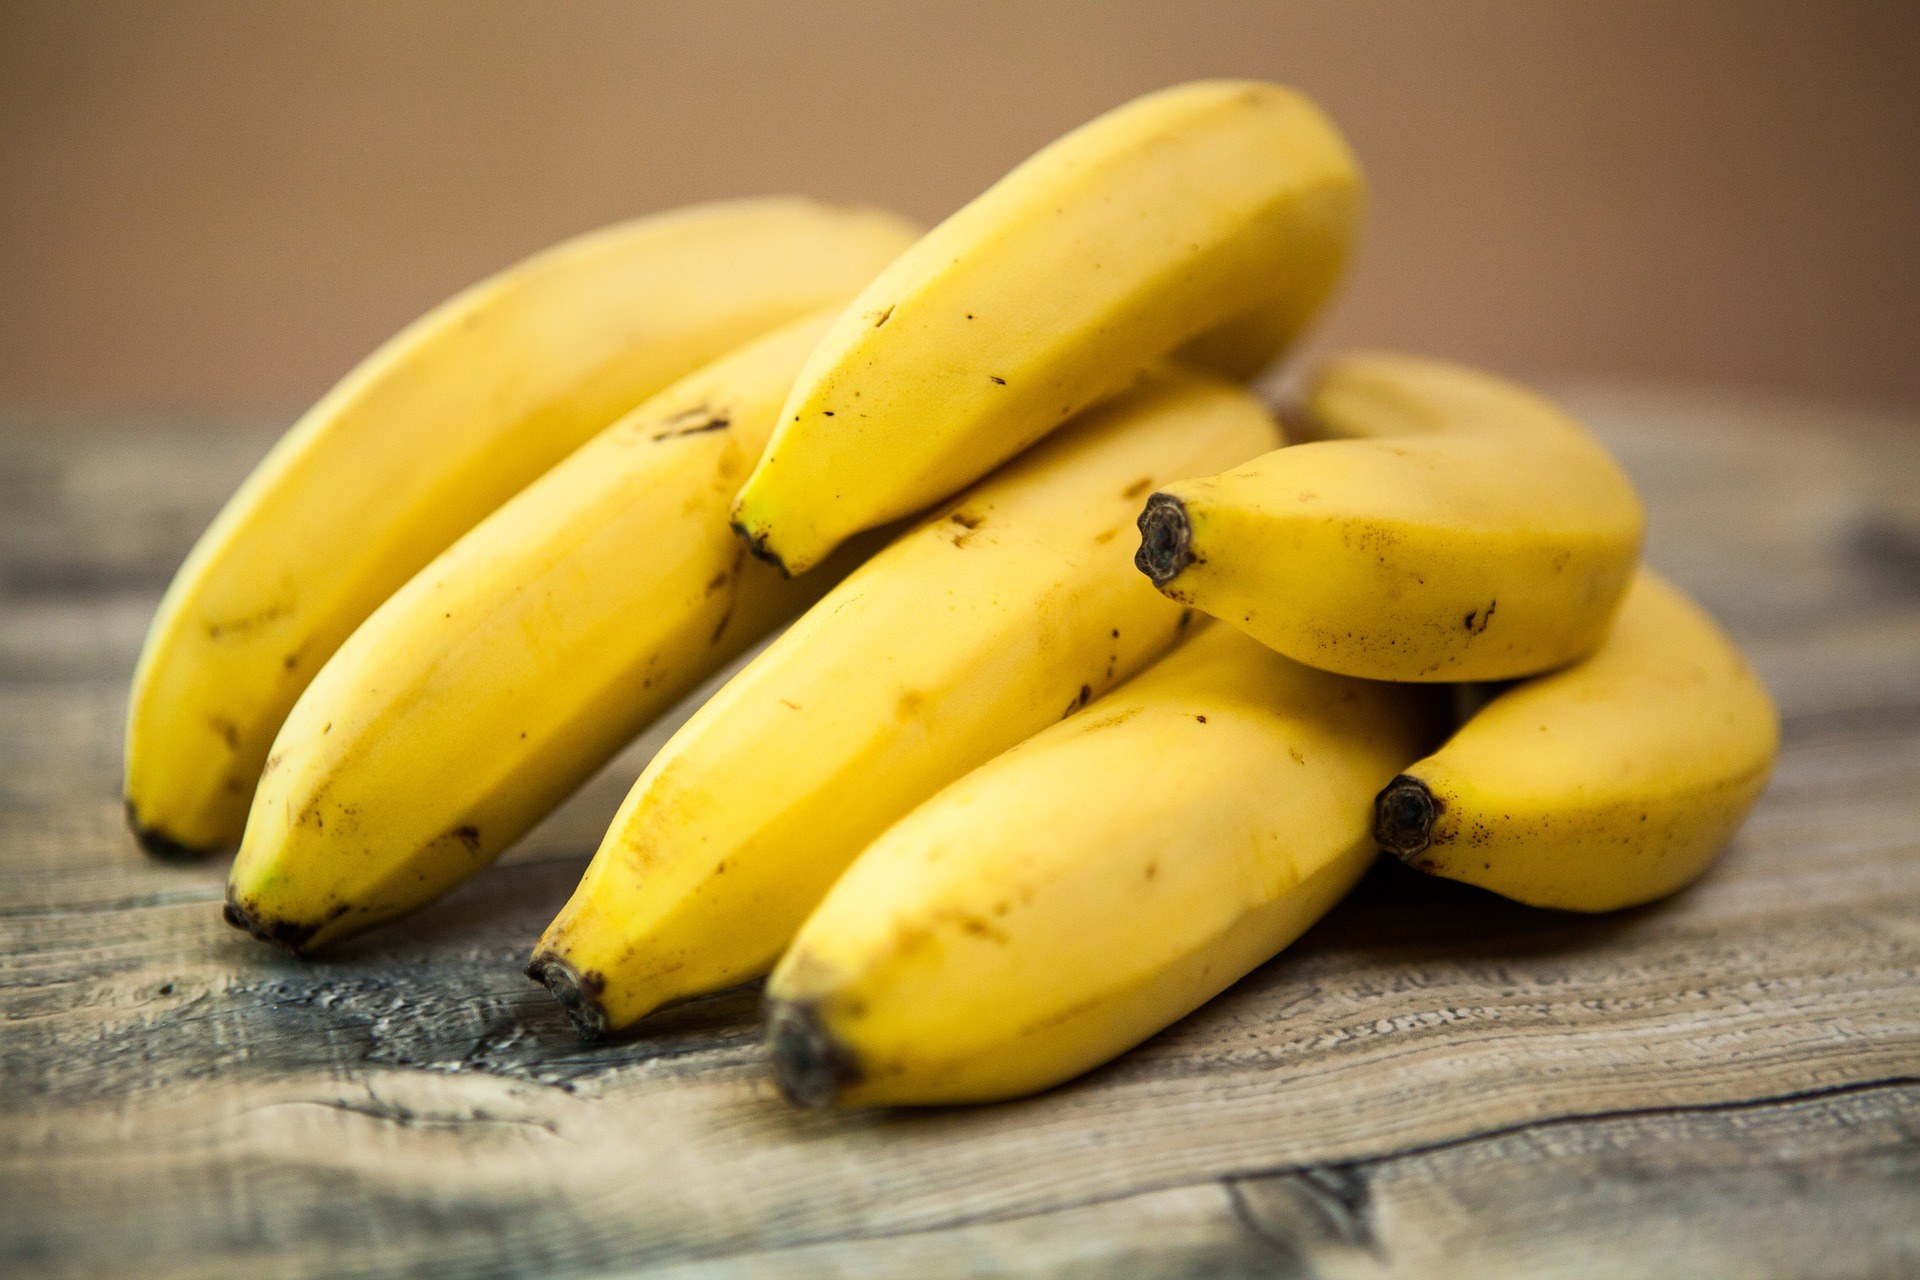 Διατροφή με μπανάνες: Μπορεί να προκαλέσει αέρια